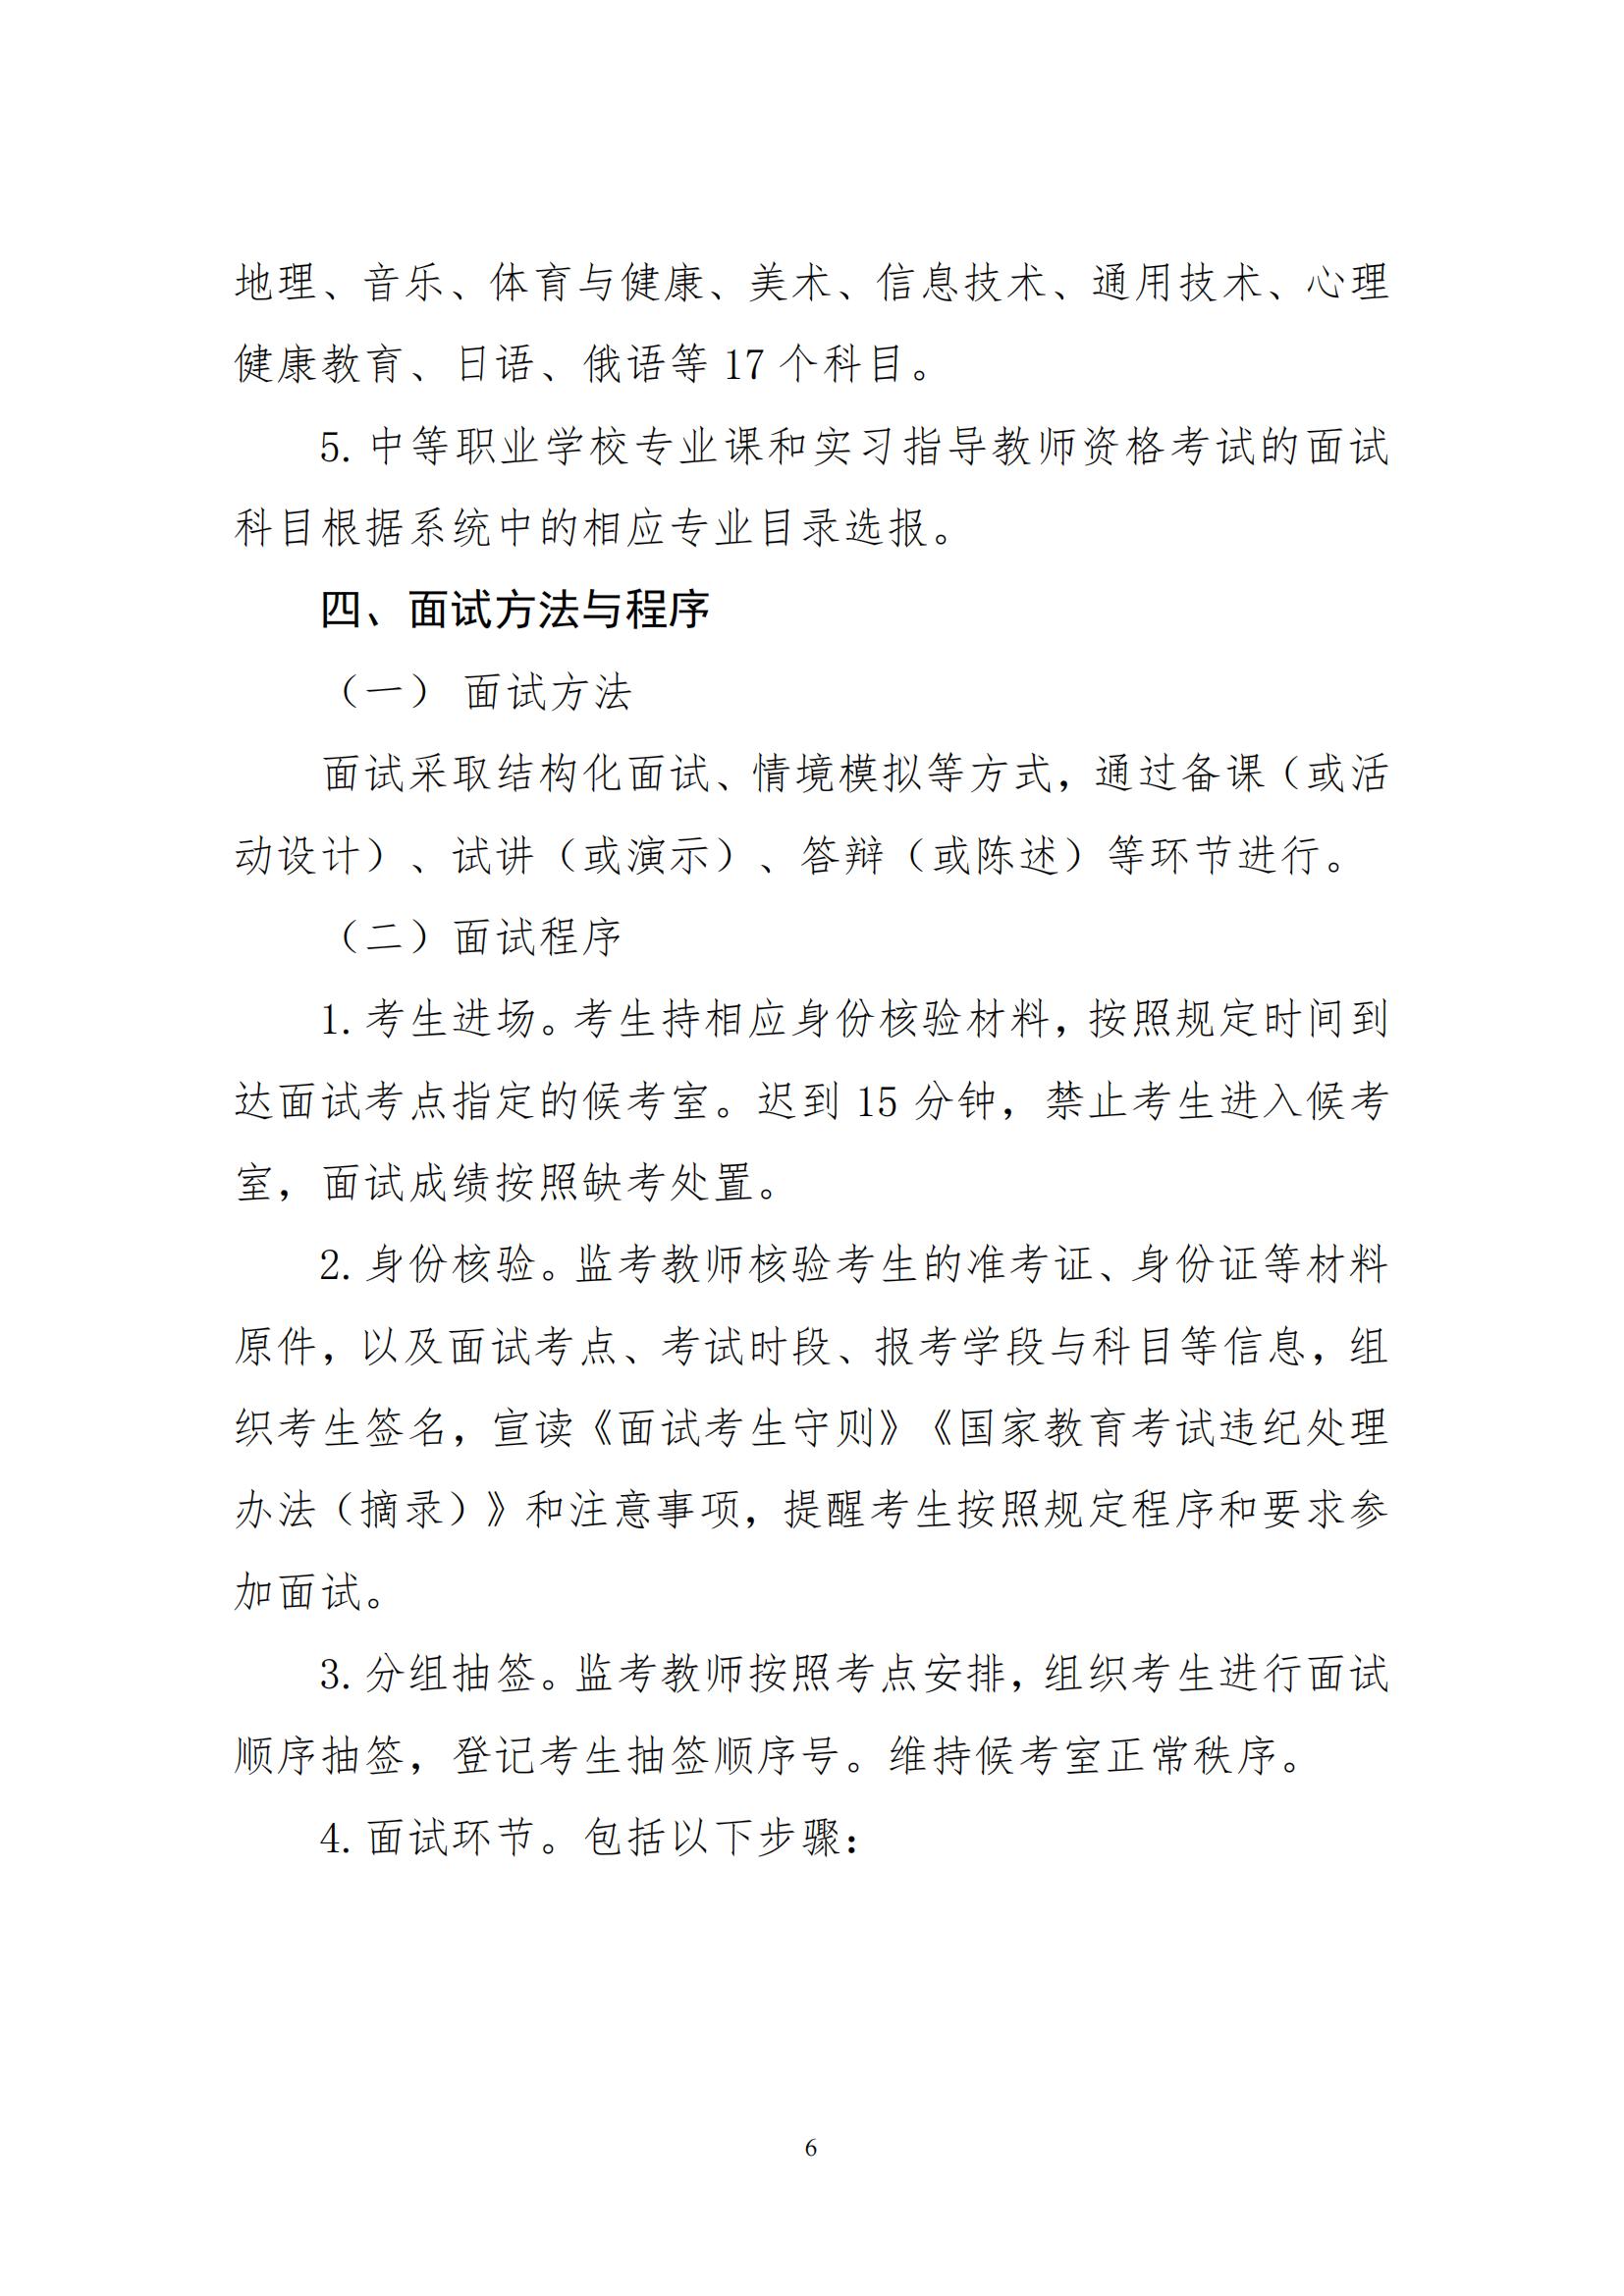 2022年湖南省上半年中小学教师资格考试面试公告(图6)